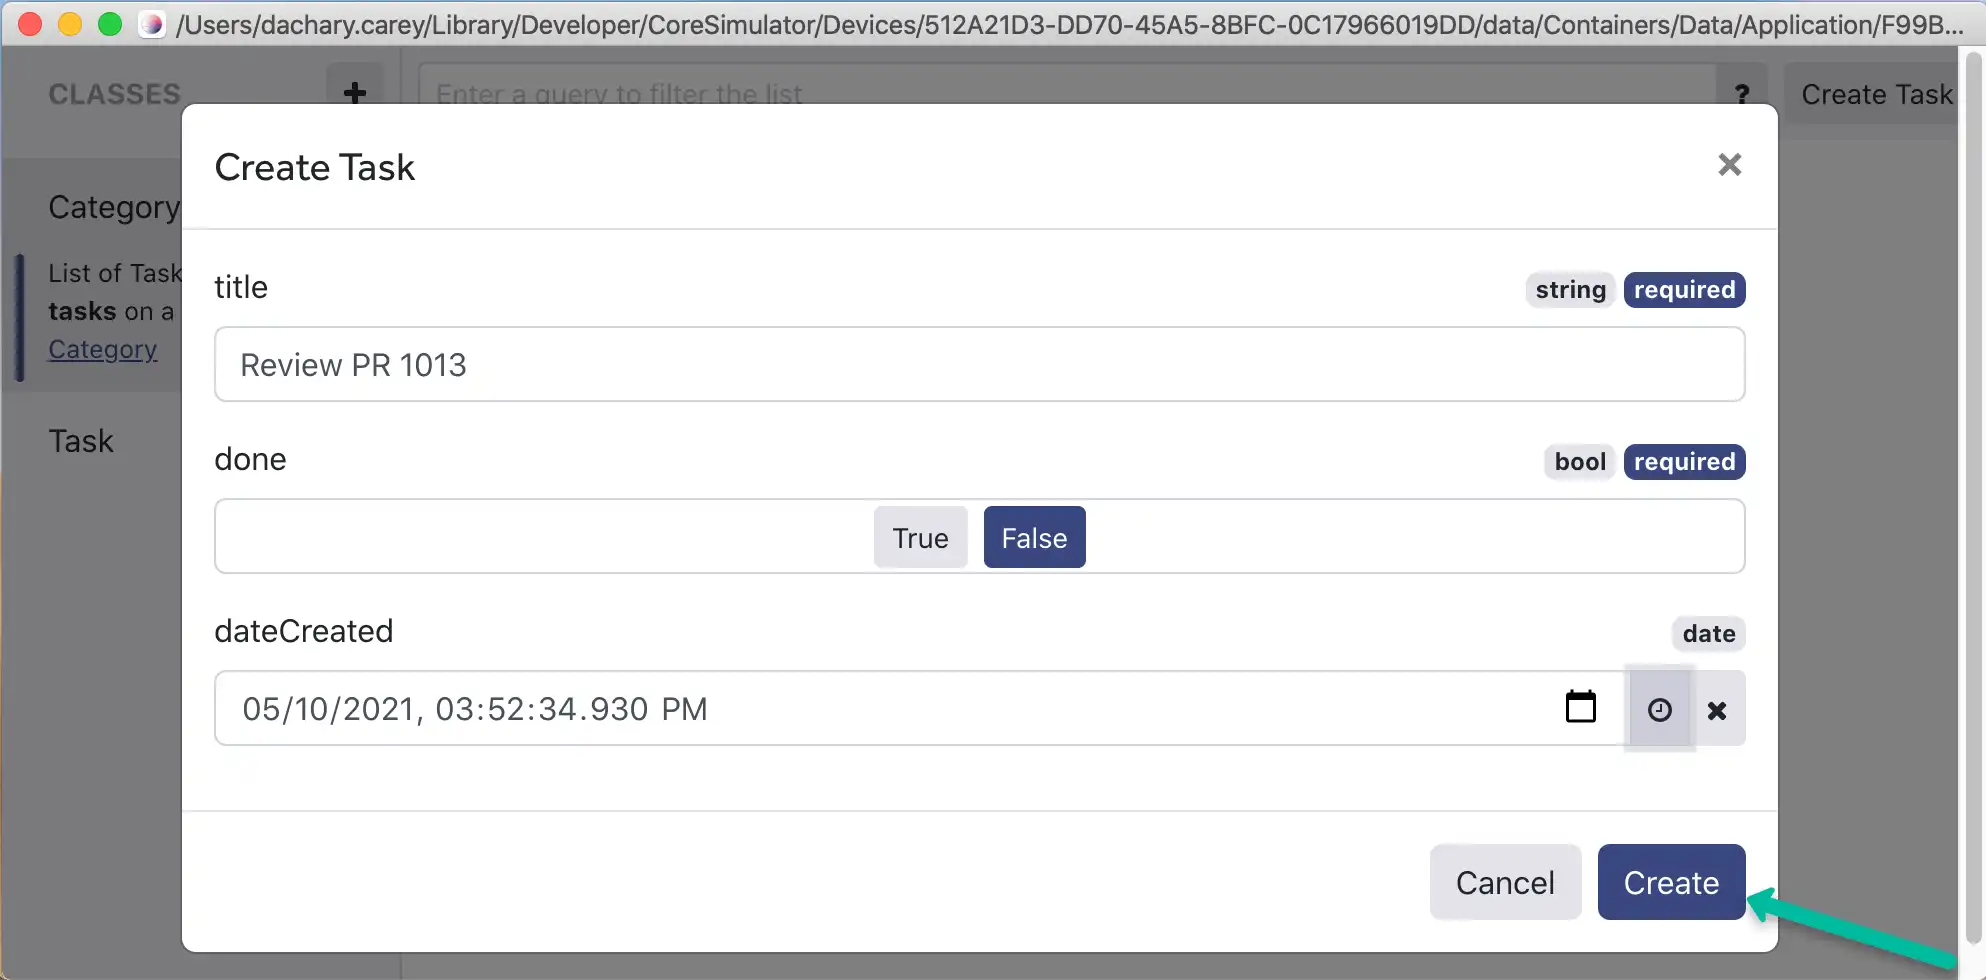 Captura de tela do Realm Studio mostrando um usuário inserindo propriedades para um novo objeto de tarefa e o botão "Criar".